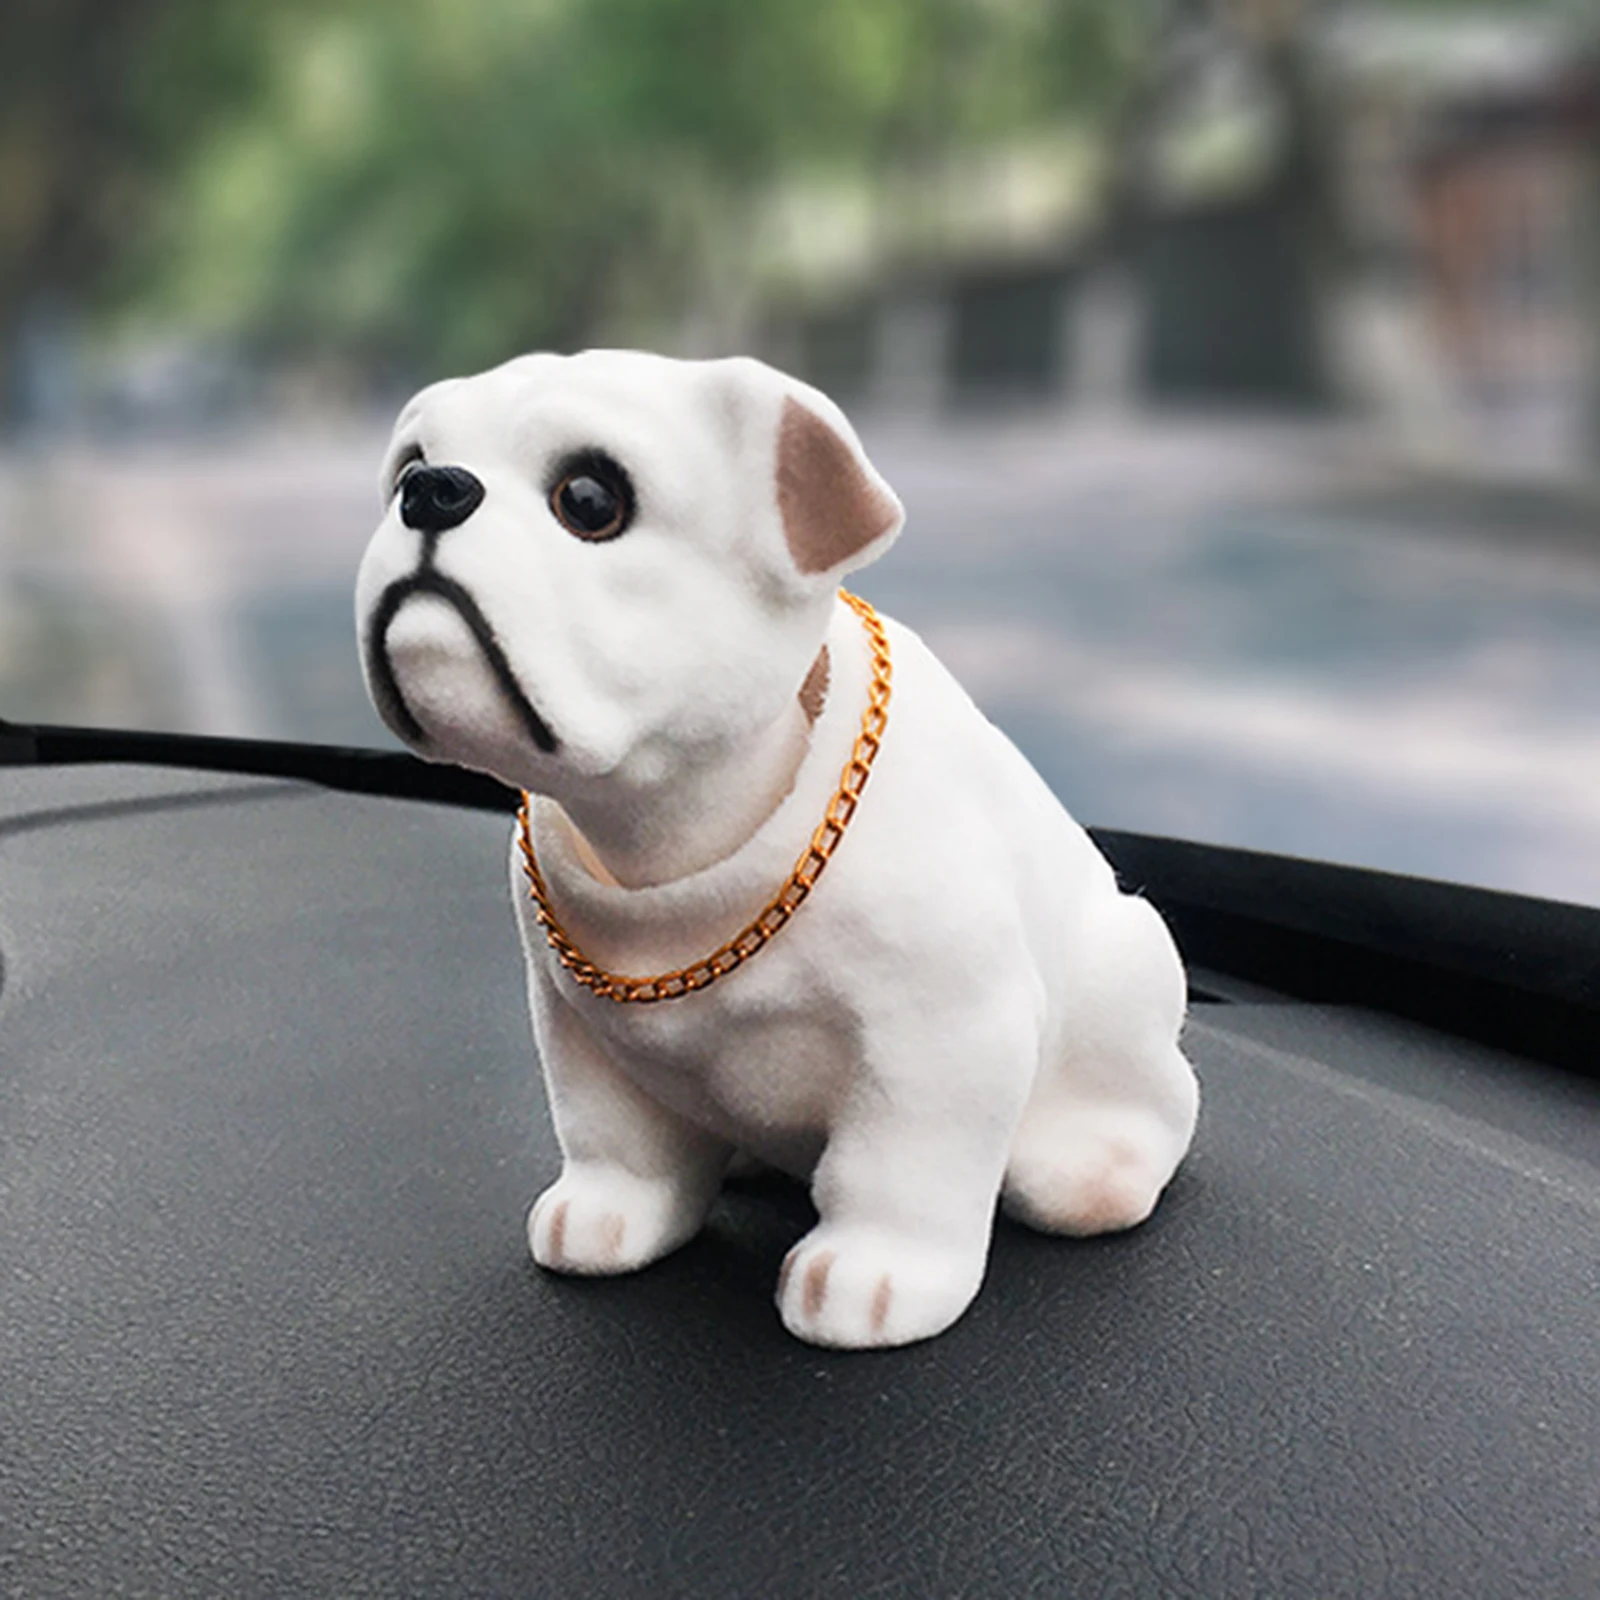 1 Stück Solarbetriebenes Auto Armaturenbrett Ornament mit Hund Form, aktuelle Trends, günstig kaufen